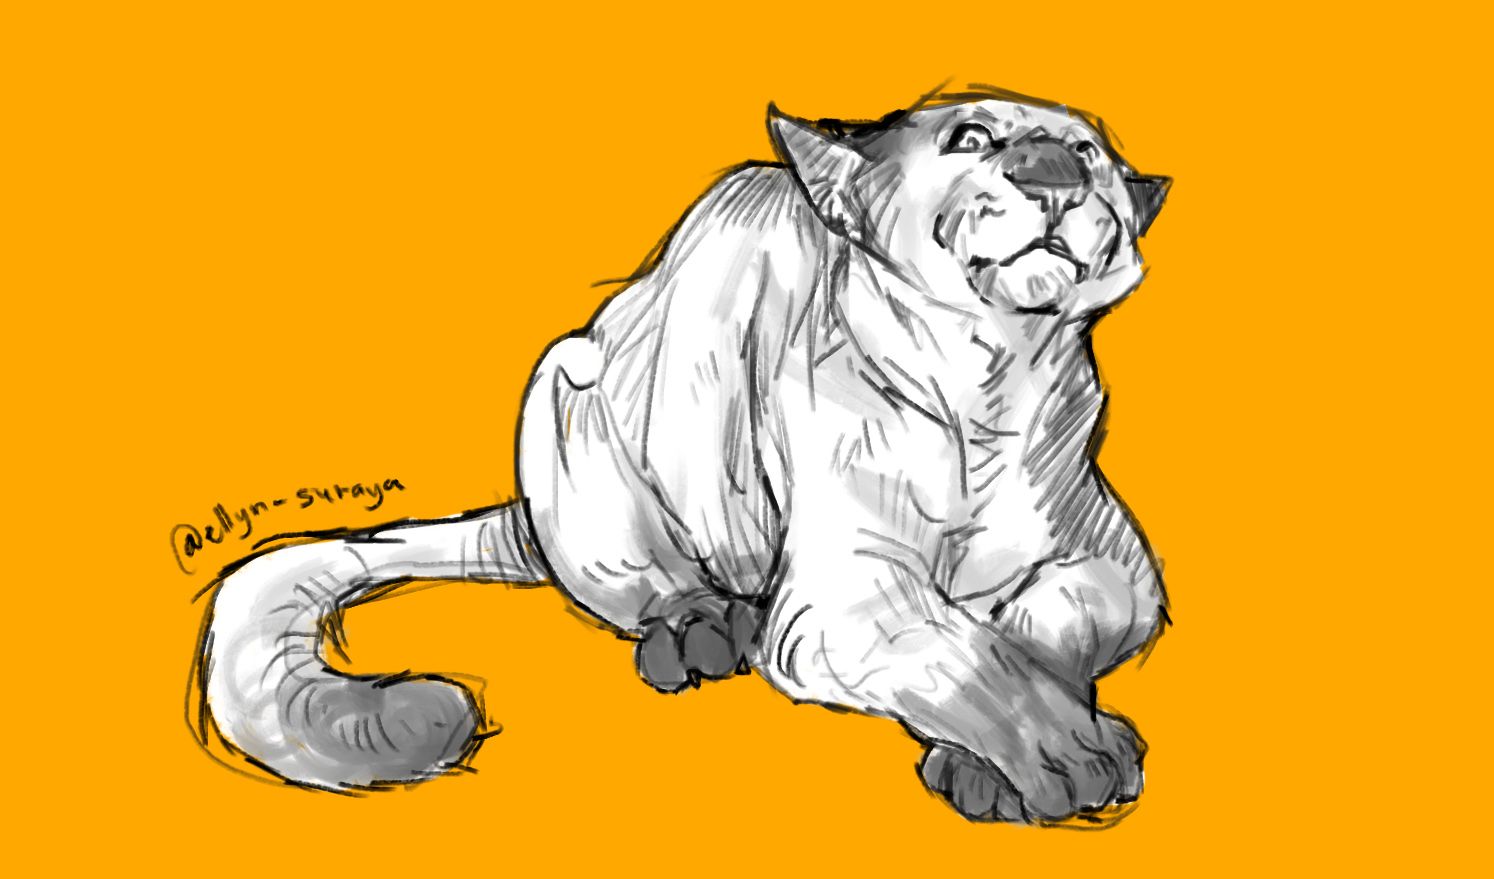 Daily Cat Drawings_17.jpg